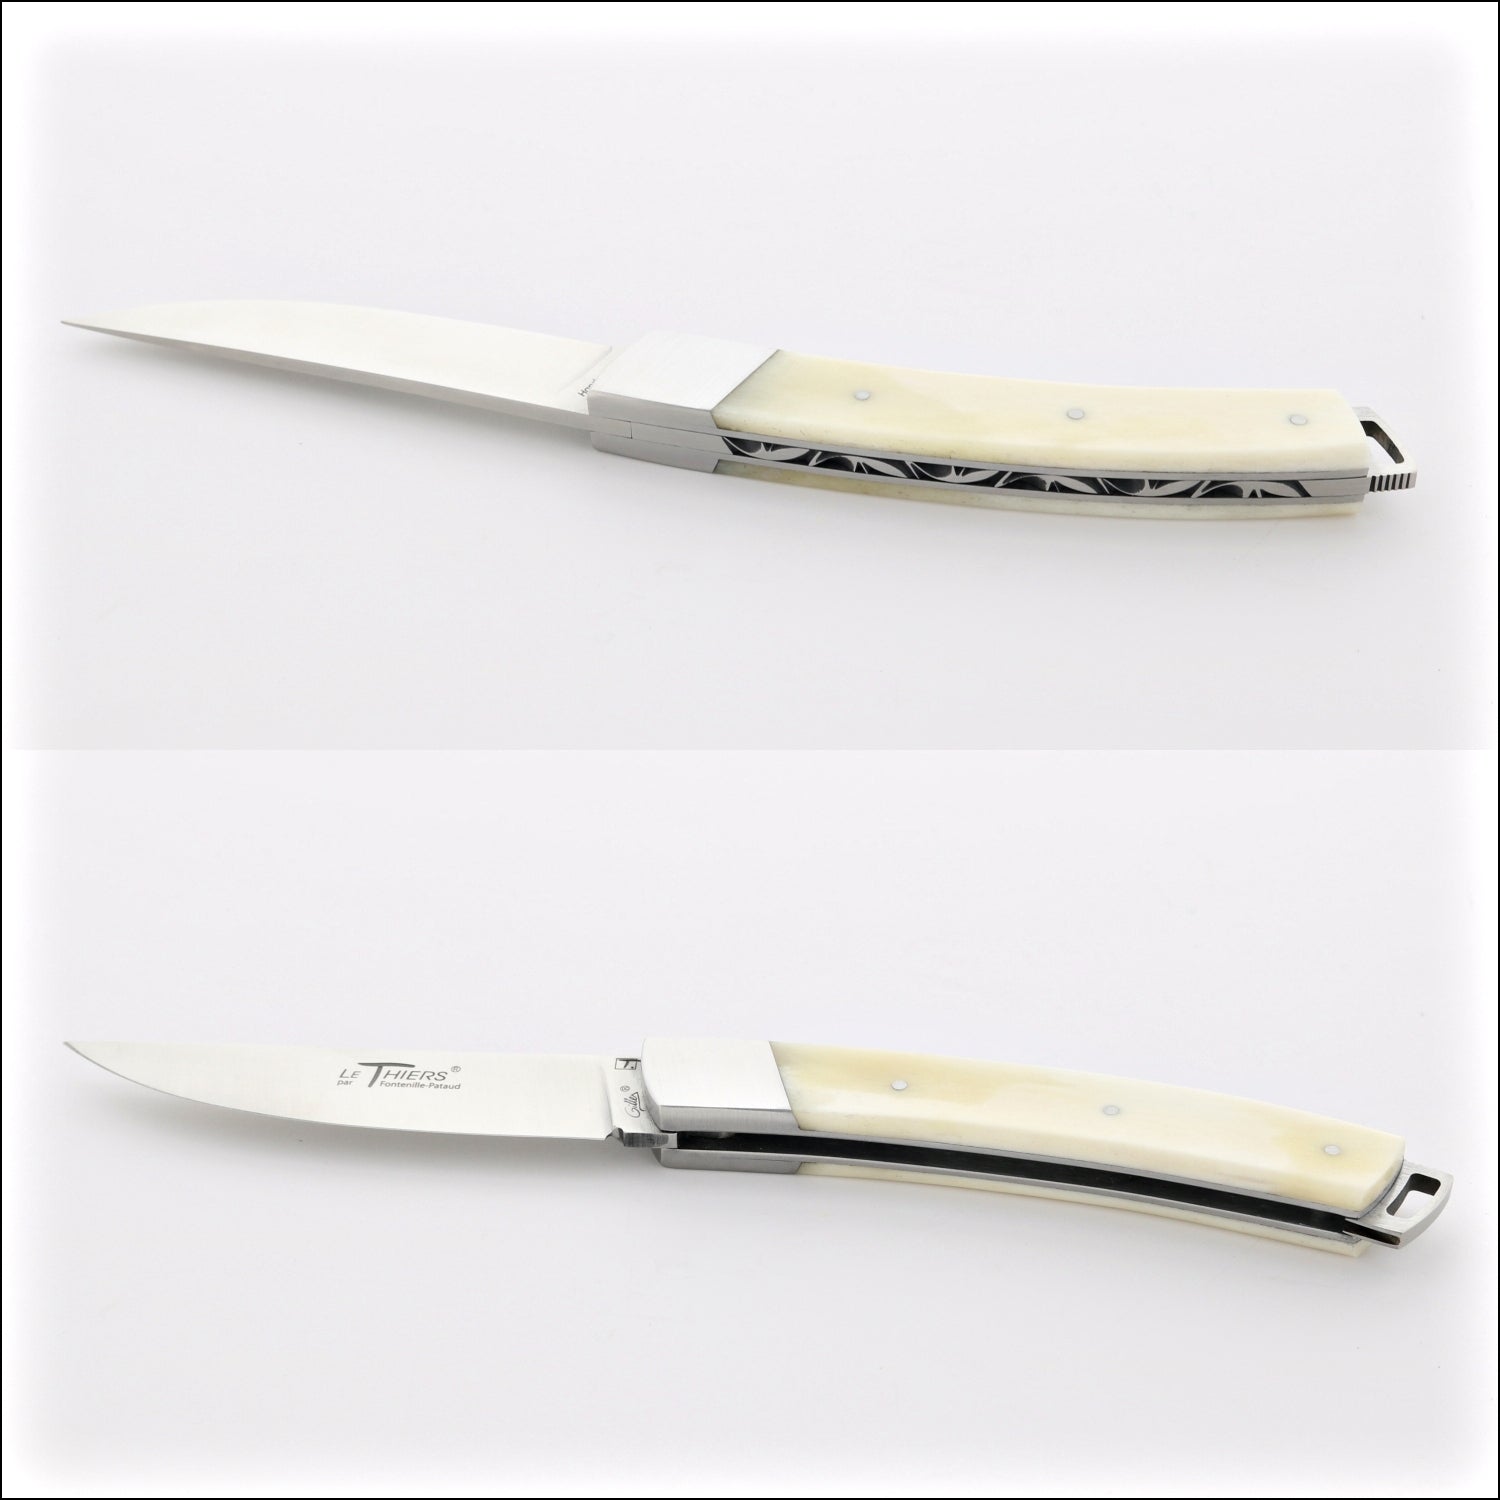 Le Thiers® Nature 11 cm Pocket Knife Cattle Bone Handle